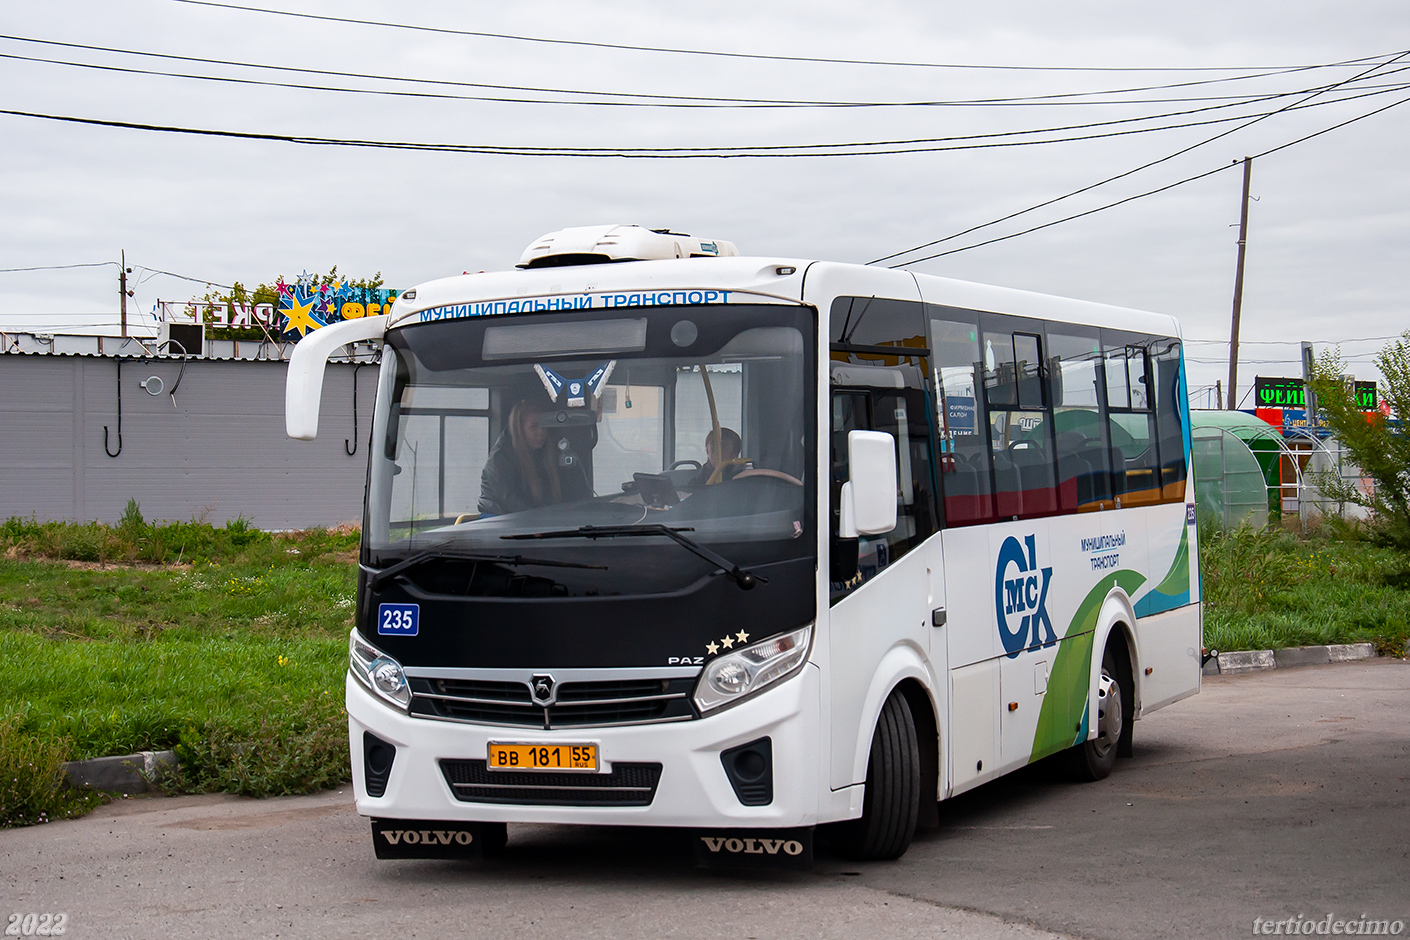 Omszki terület, PAZ-320435-04 "Vector Next" sz.: 235; Omszki terület — 19.08.2022 — XXIII City competition of professional skills of bus drivers